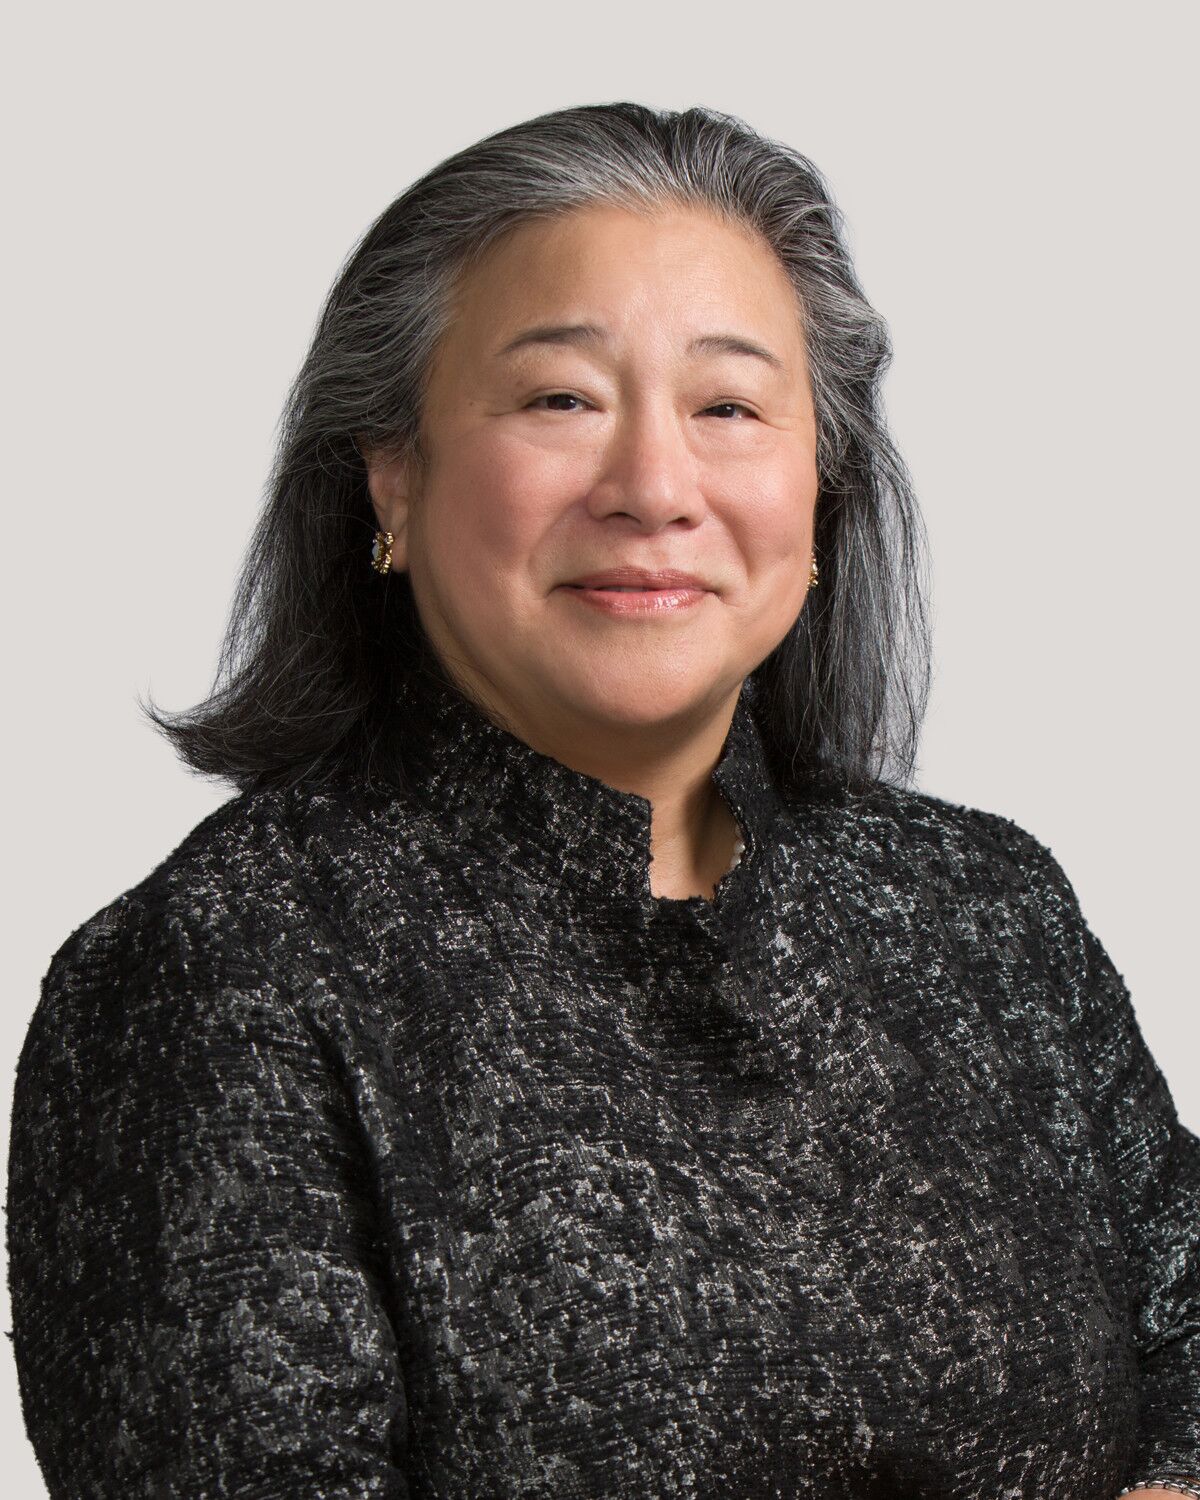 Tina Tchen